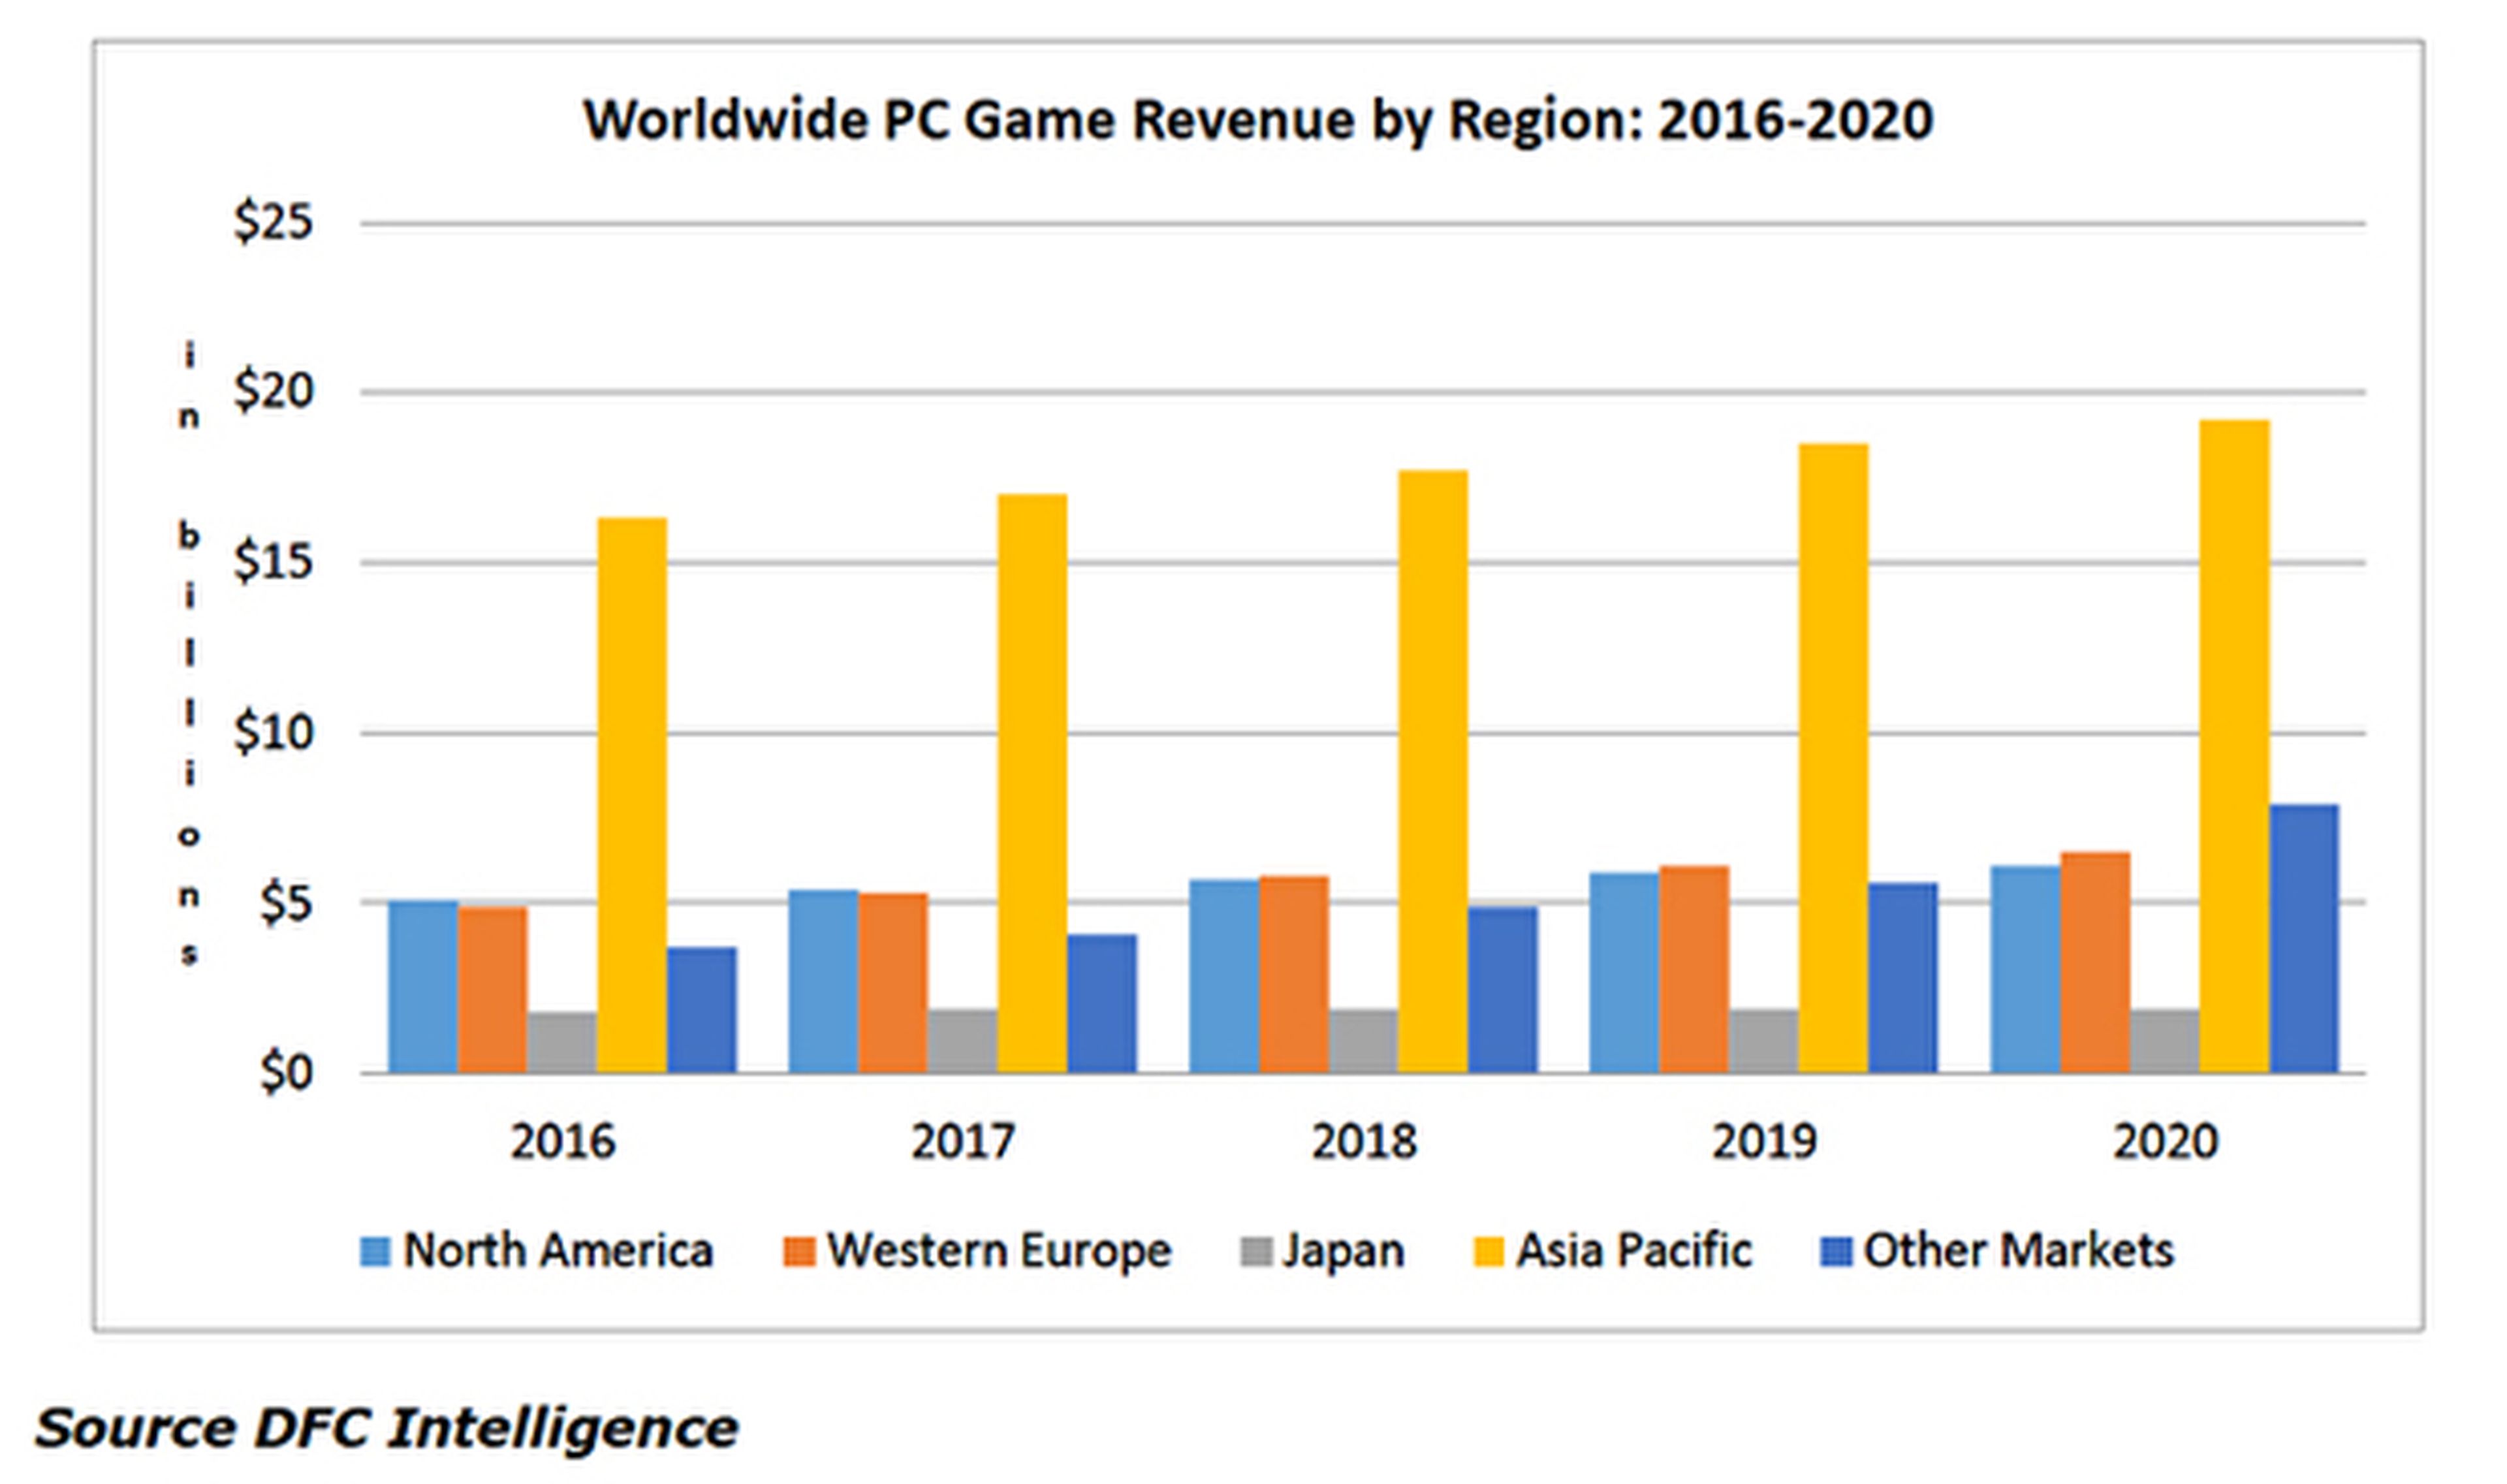 Prevision de ignresos de los videojuegos para PC para los próximos cinco años